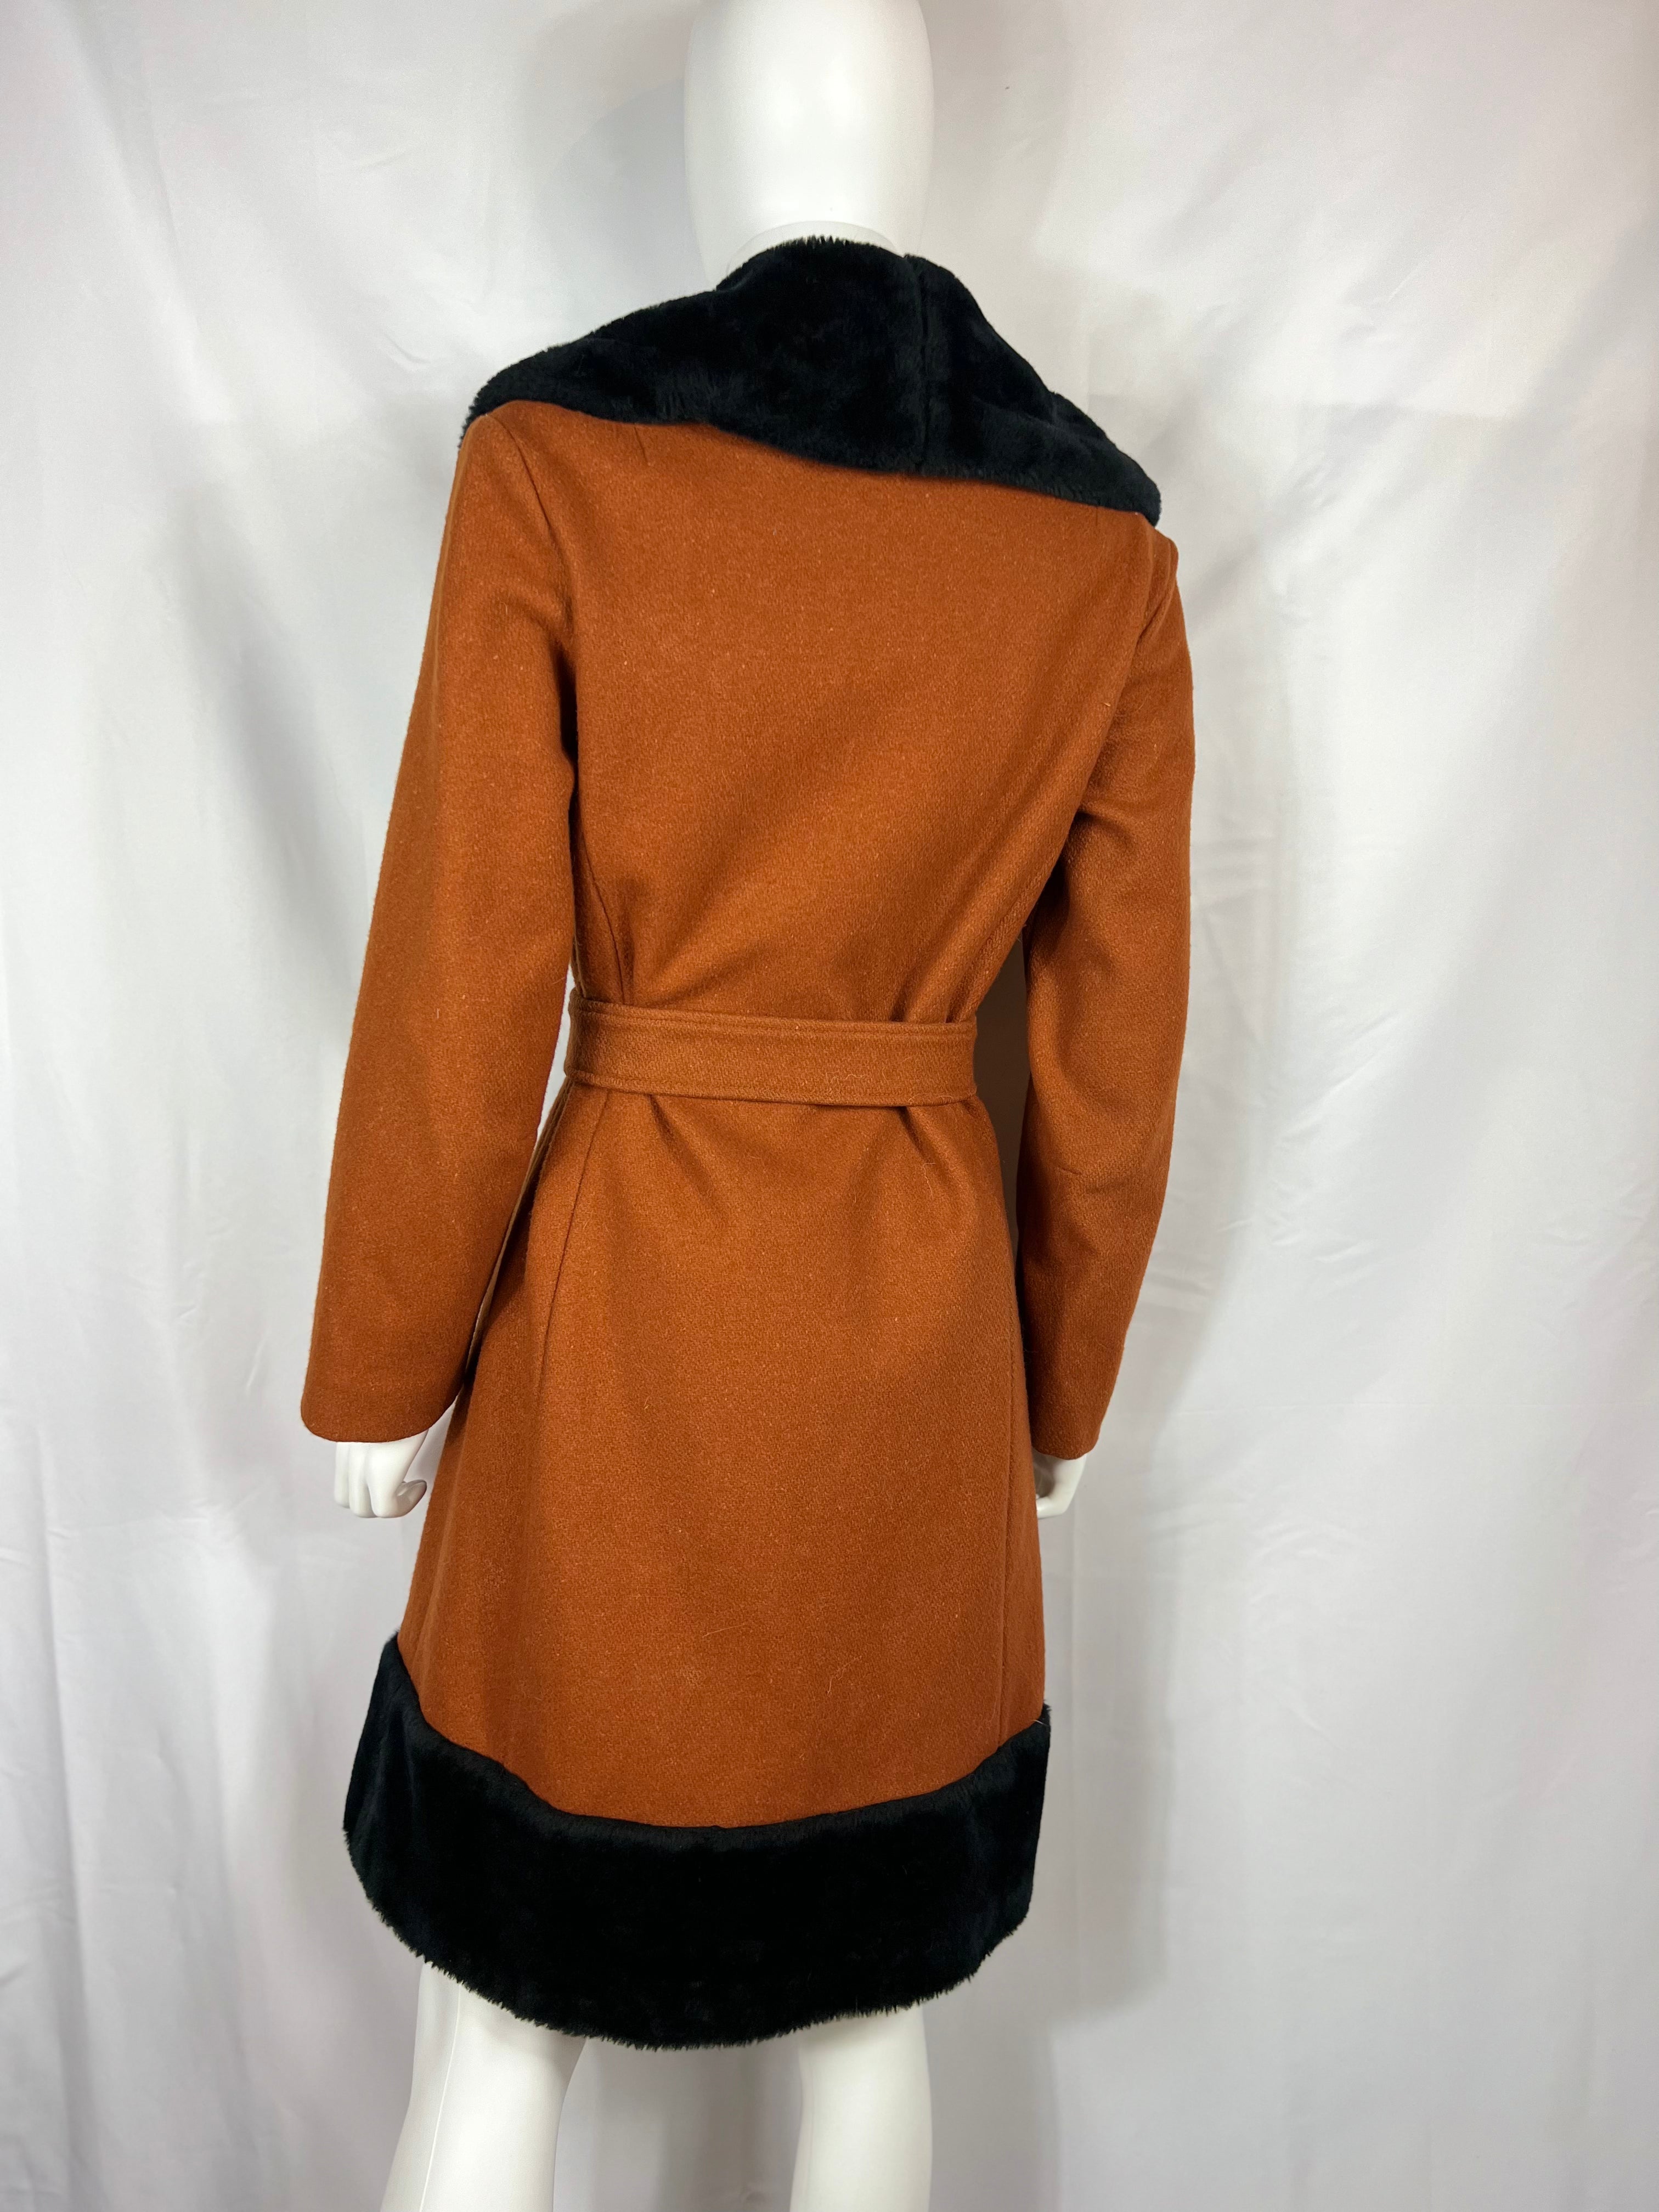 1960’s Wool & Faux Fur Coat